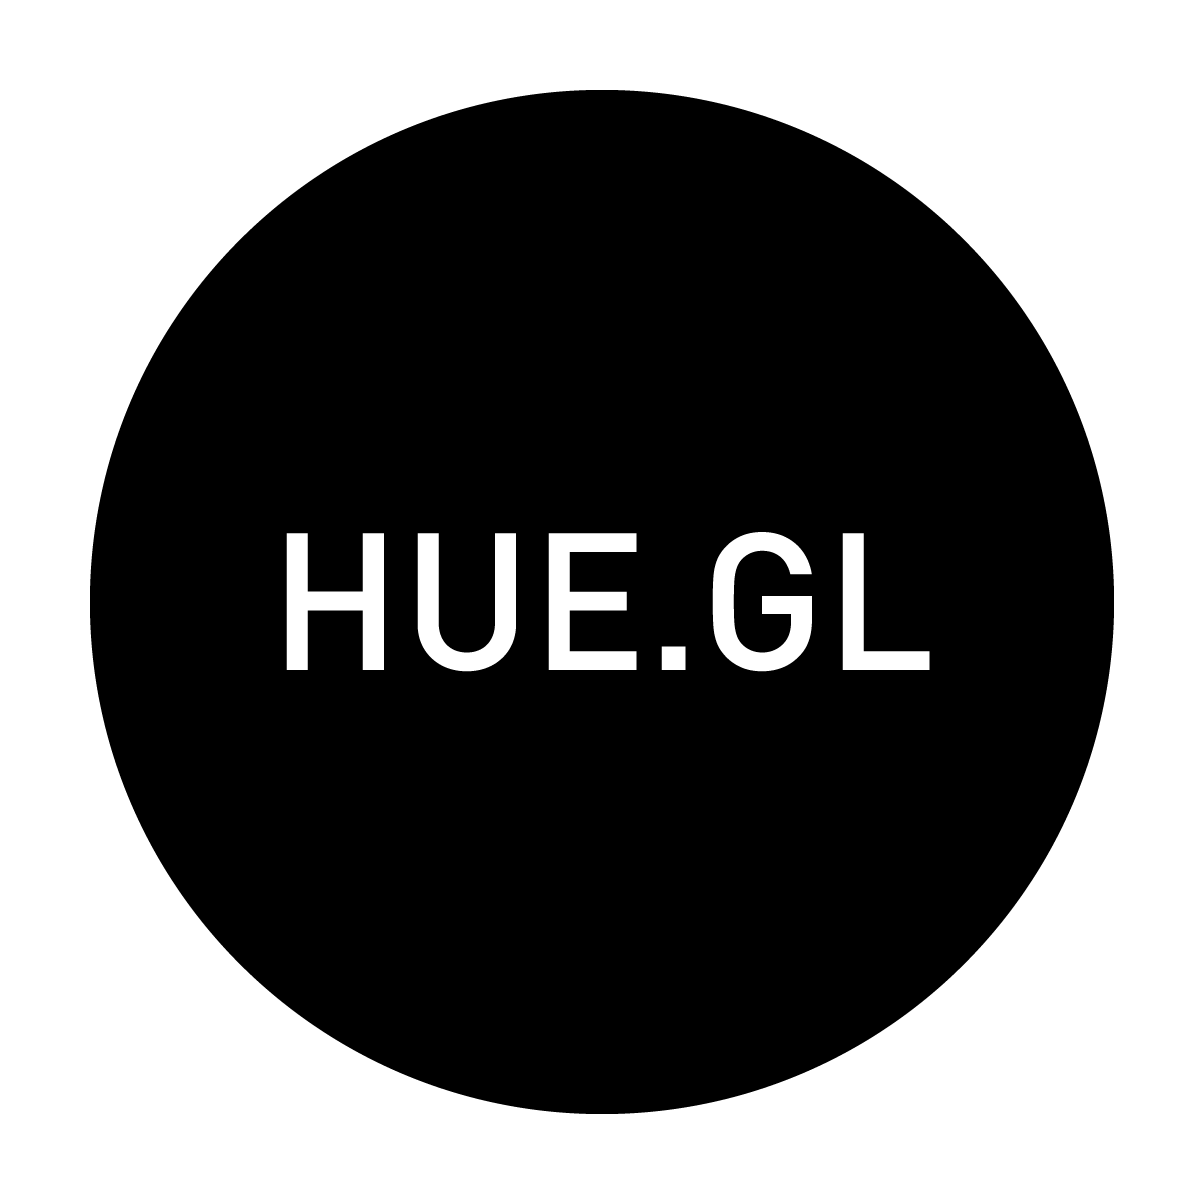 hue.gl logo